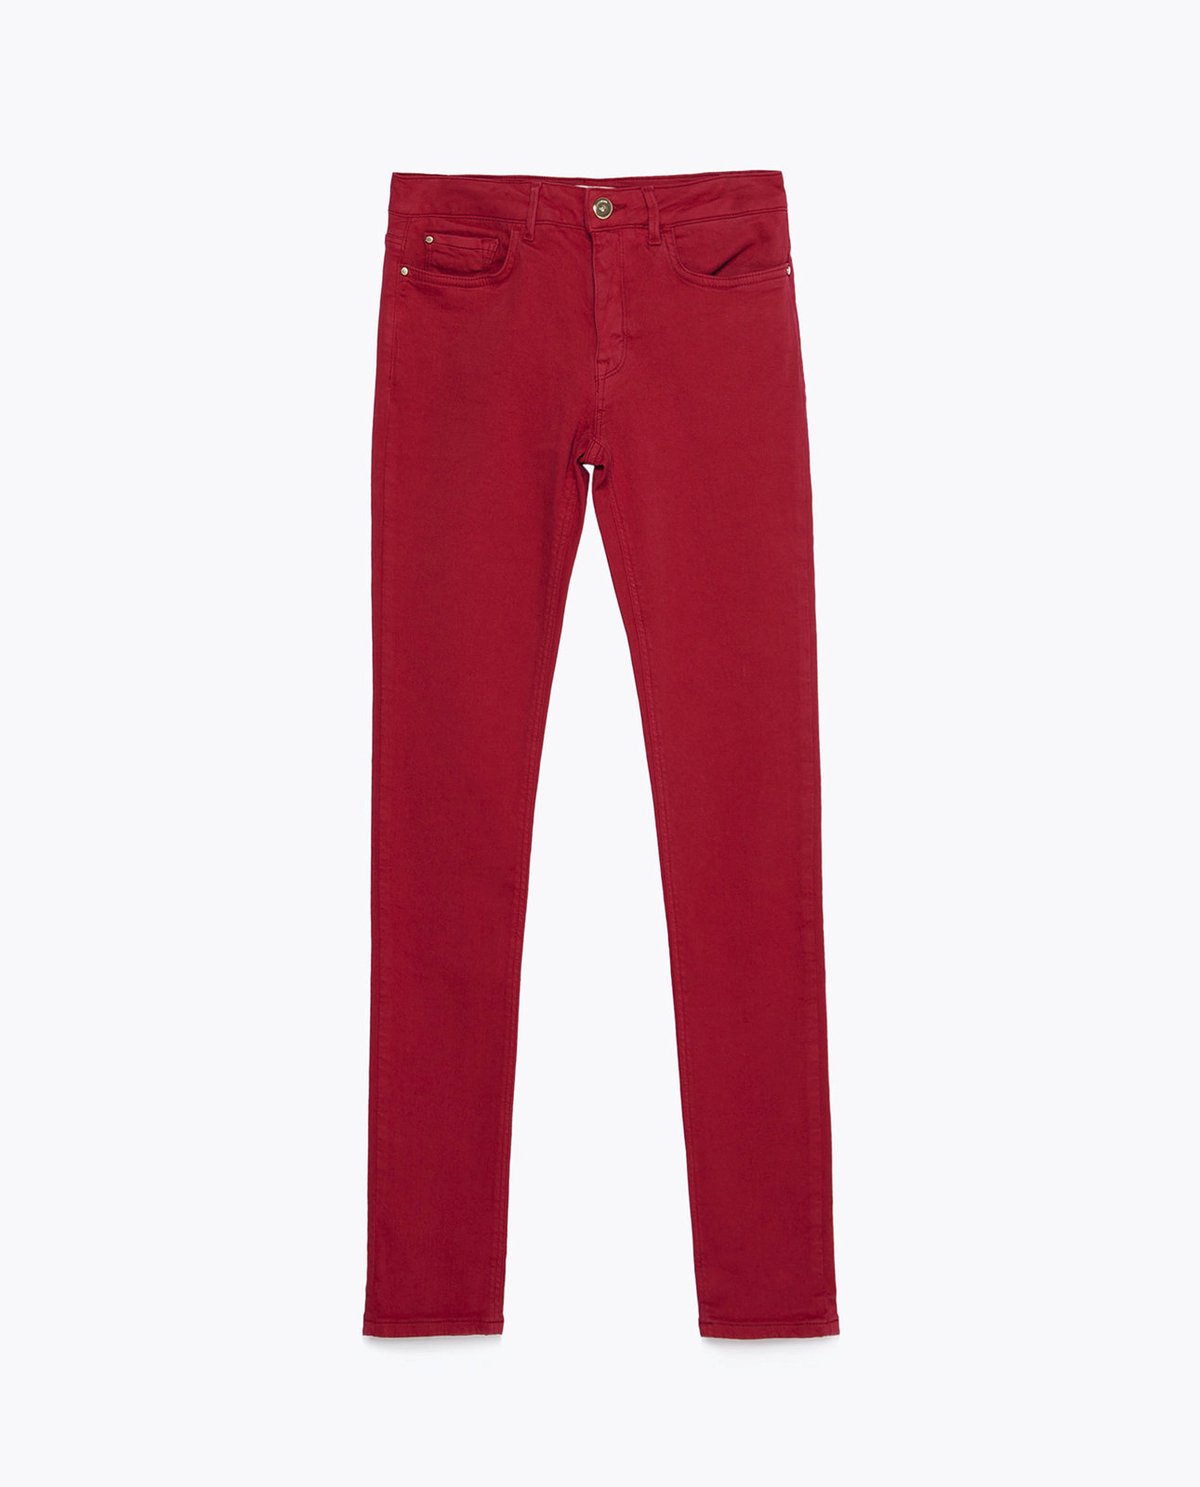 Červené kalhoty, Zara, 999 Kč.